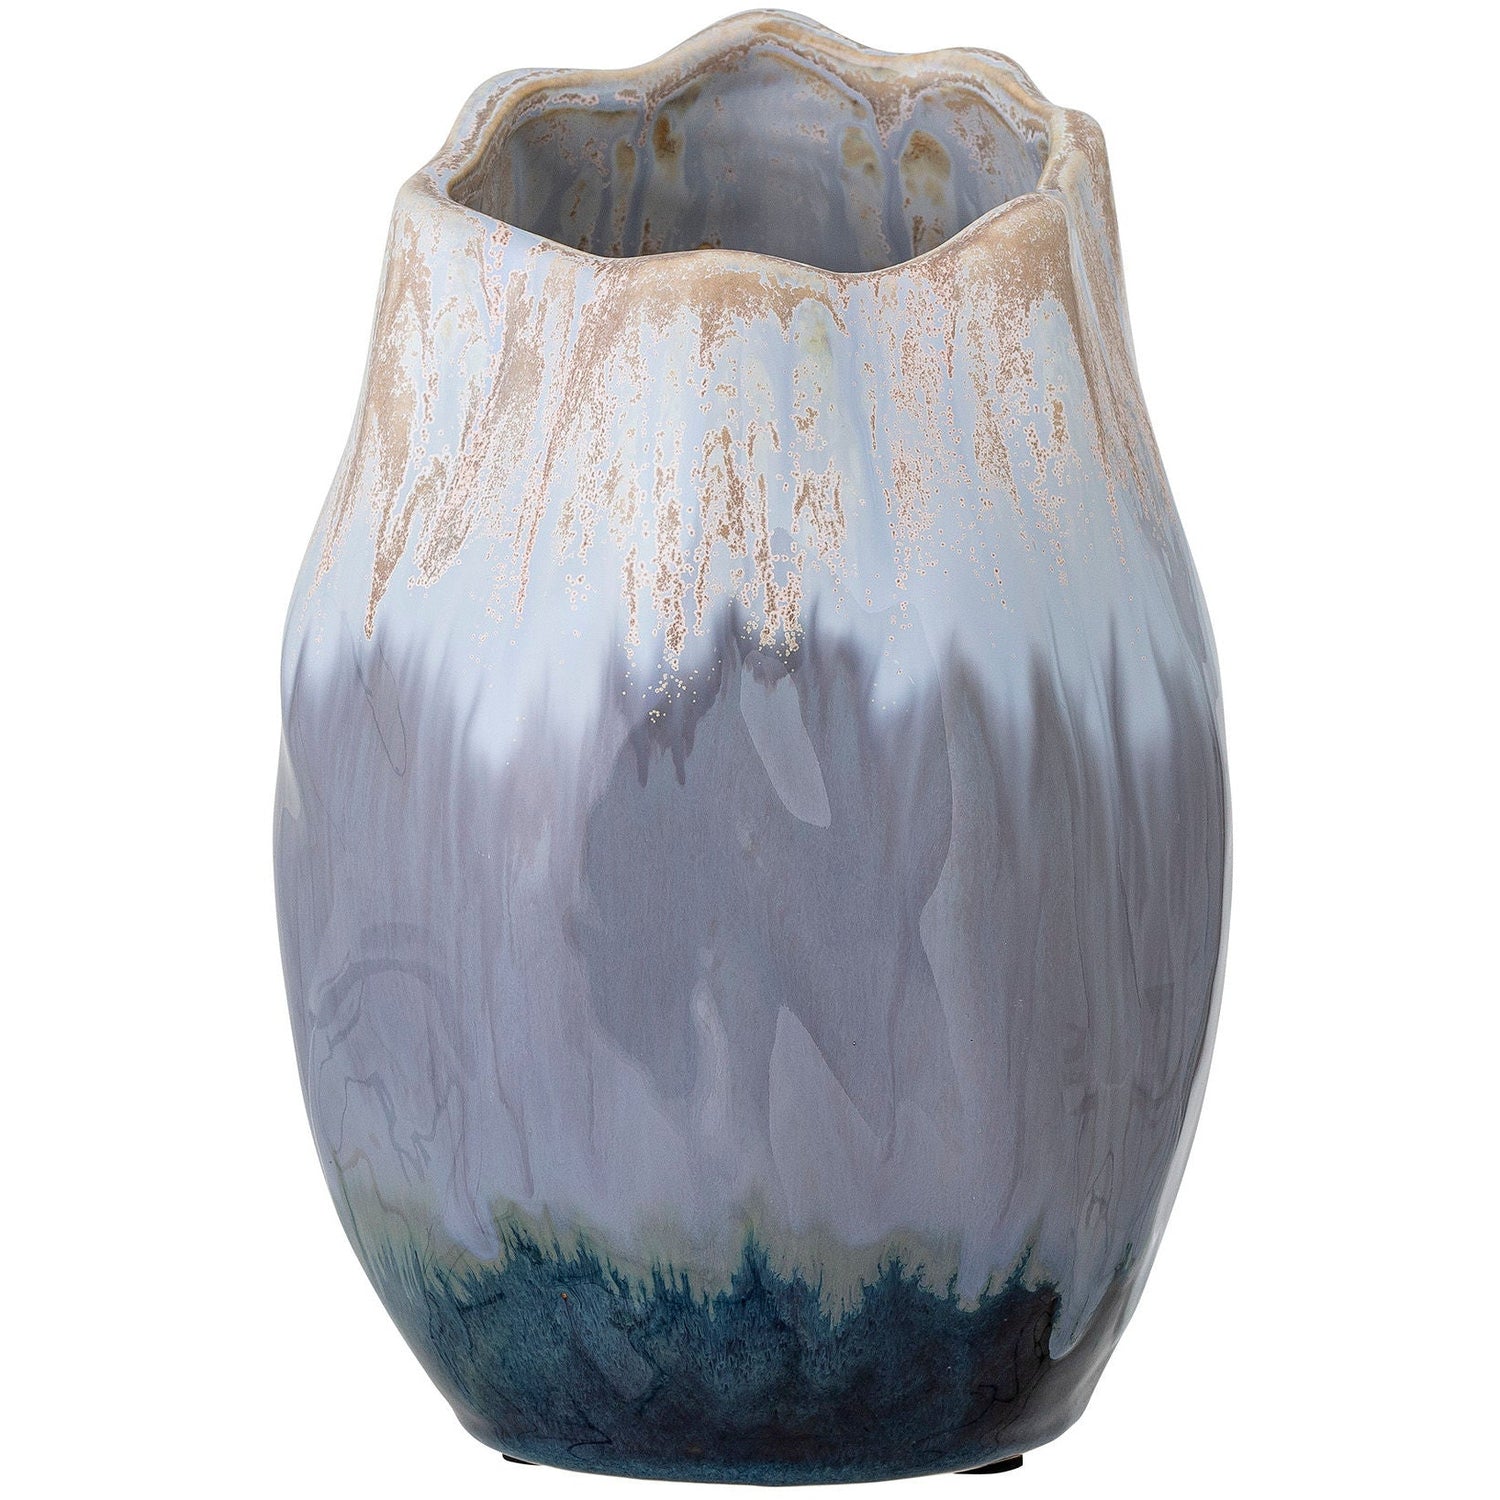 Bloomingville Jace Deco maljakko, Blå, Keramik